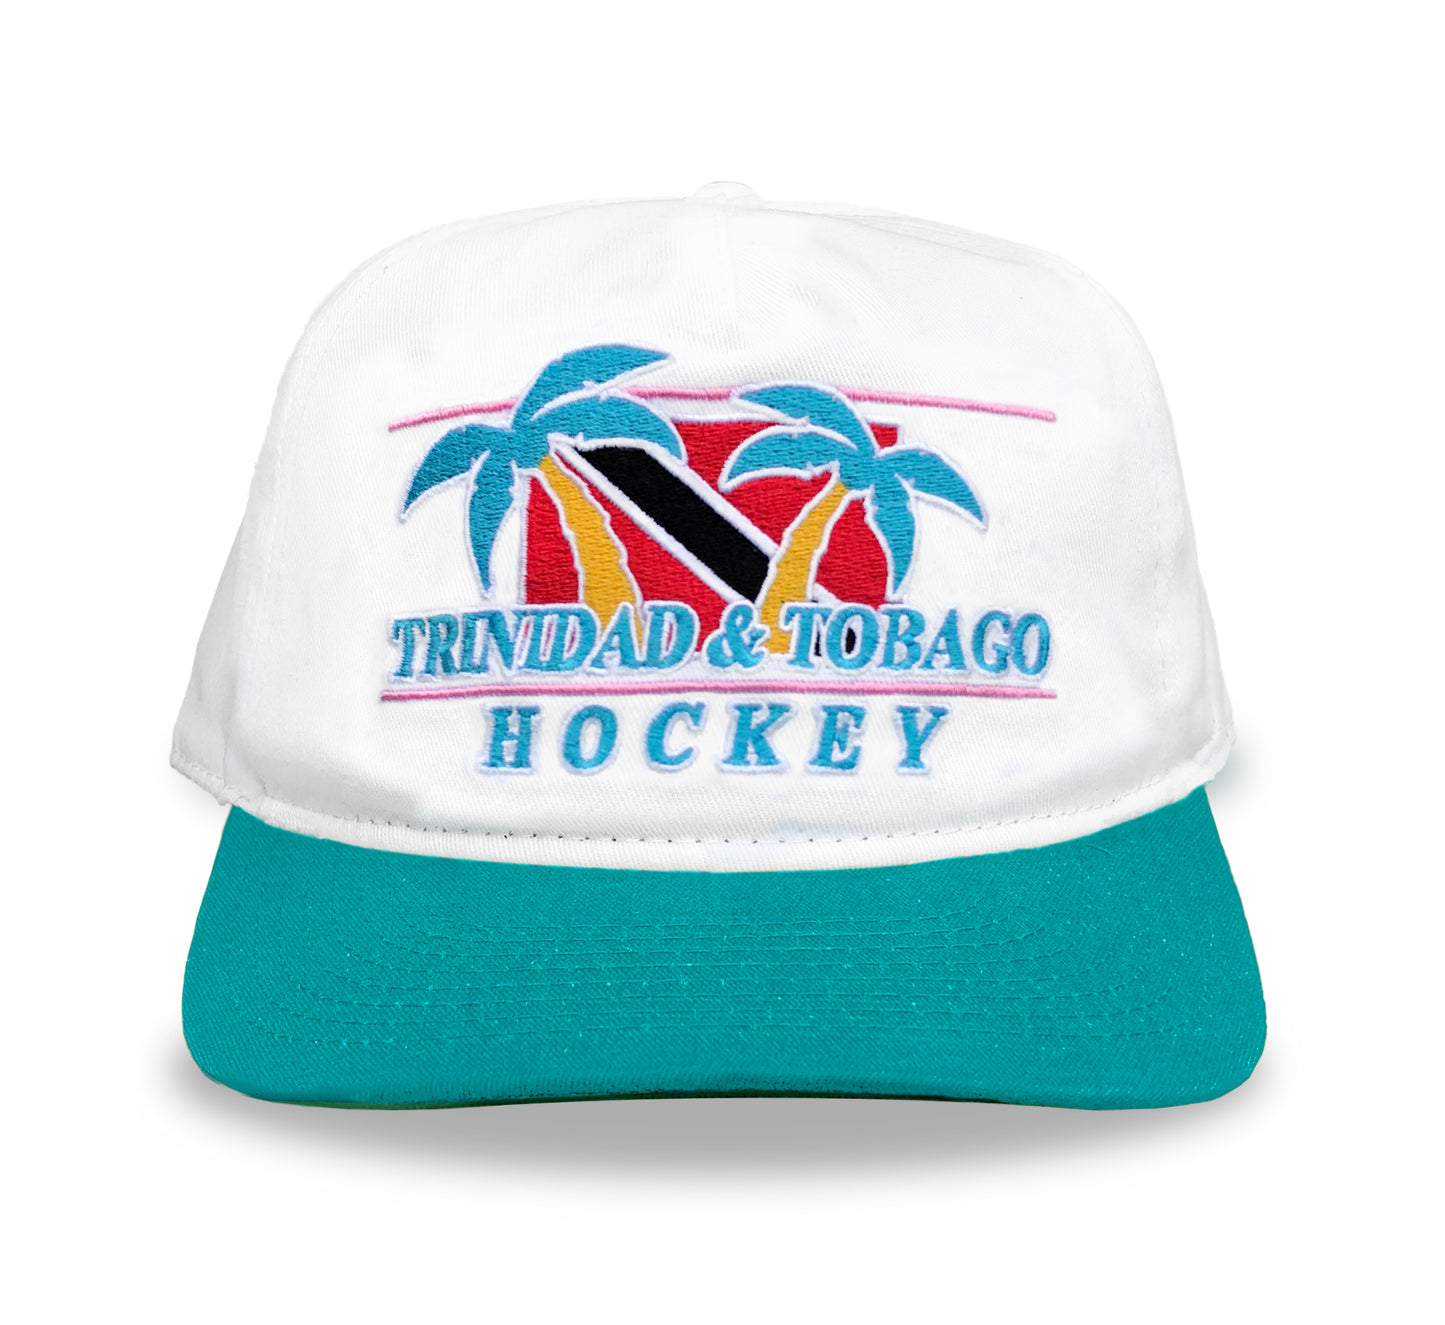 Trinidad & Tobago Hockey Jersey